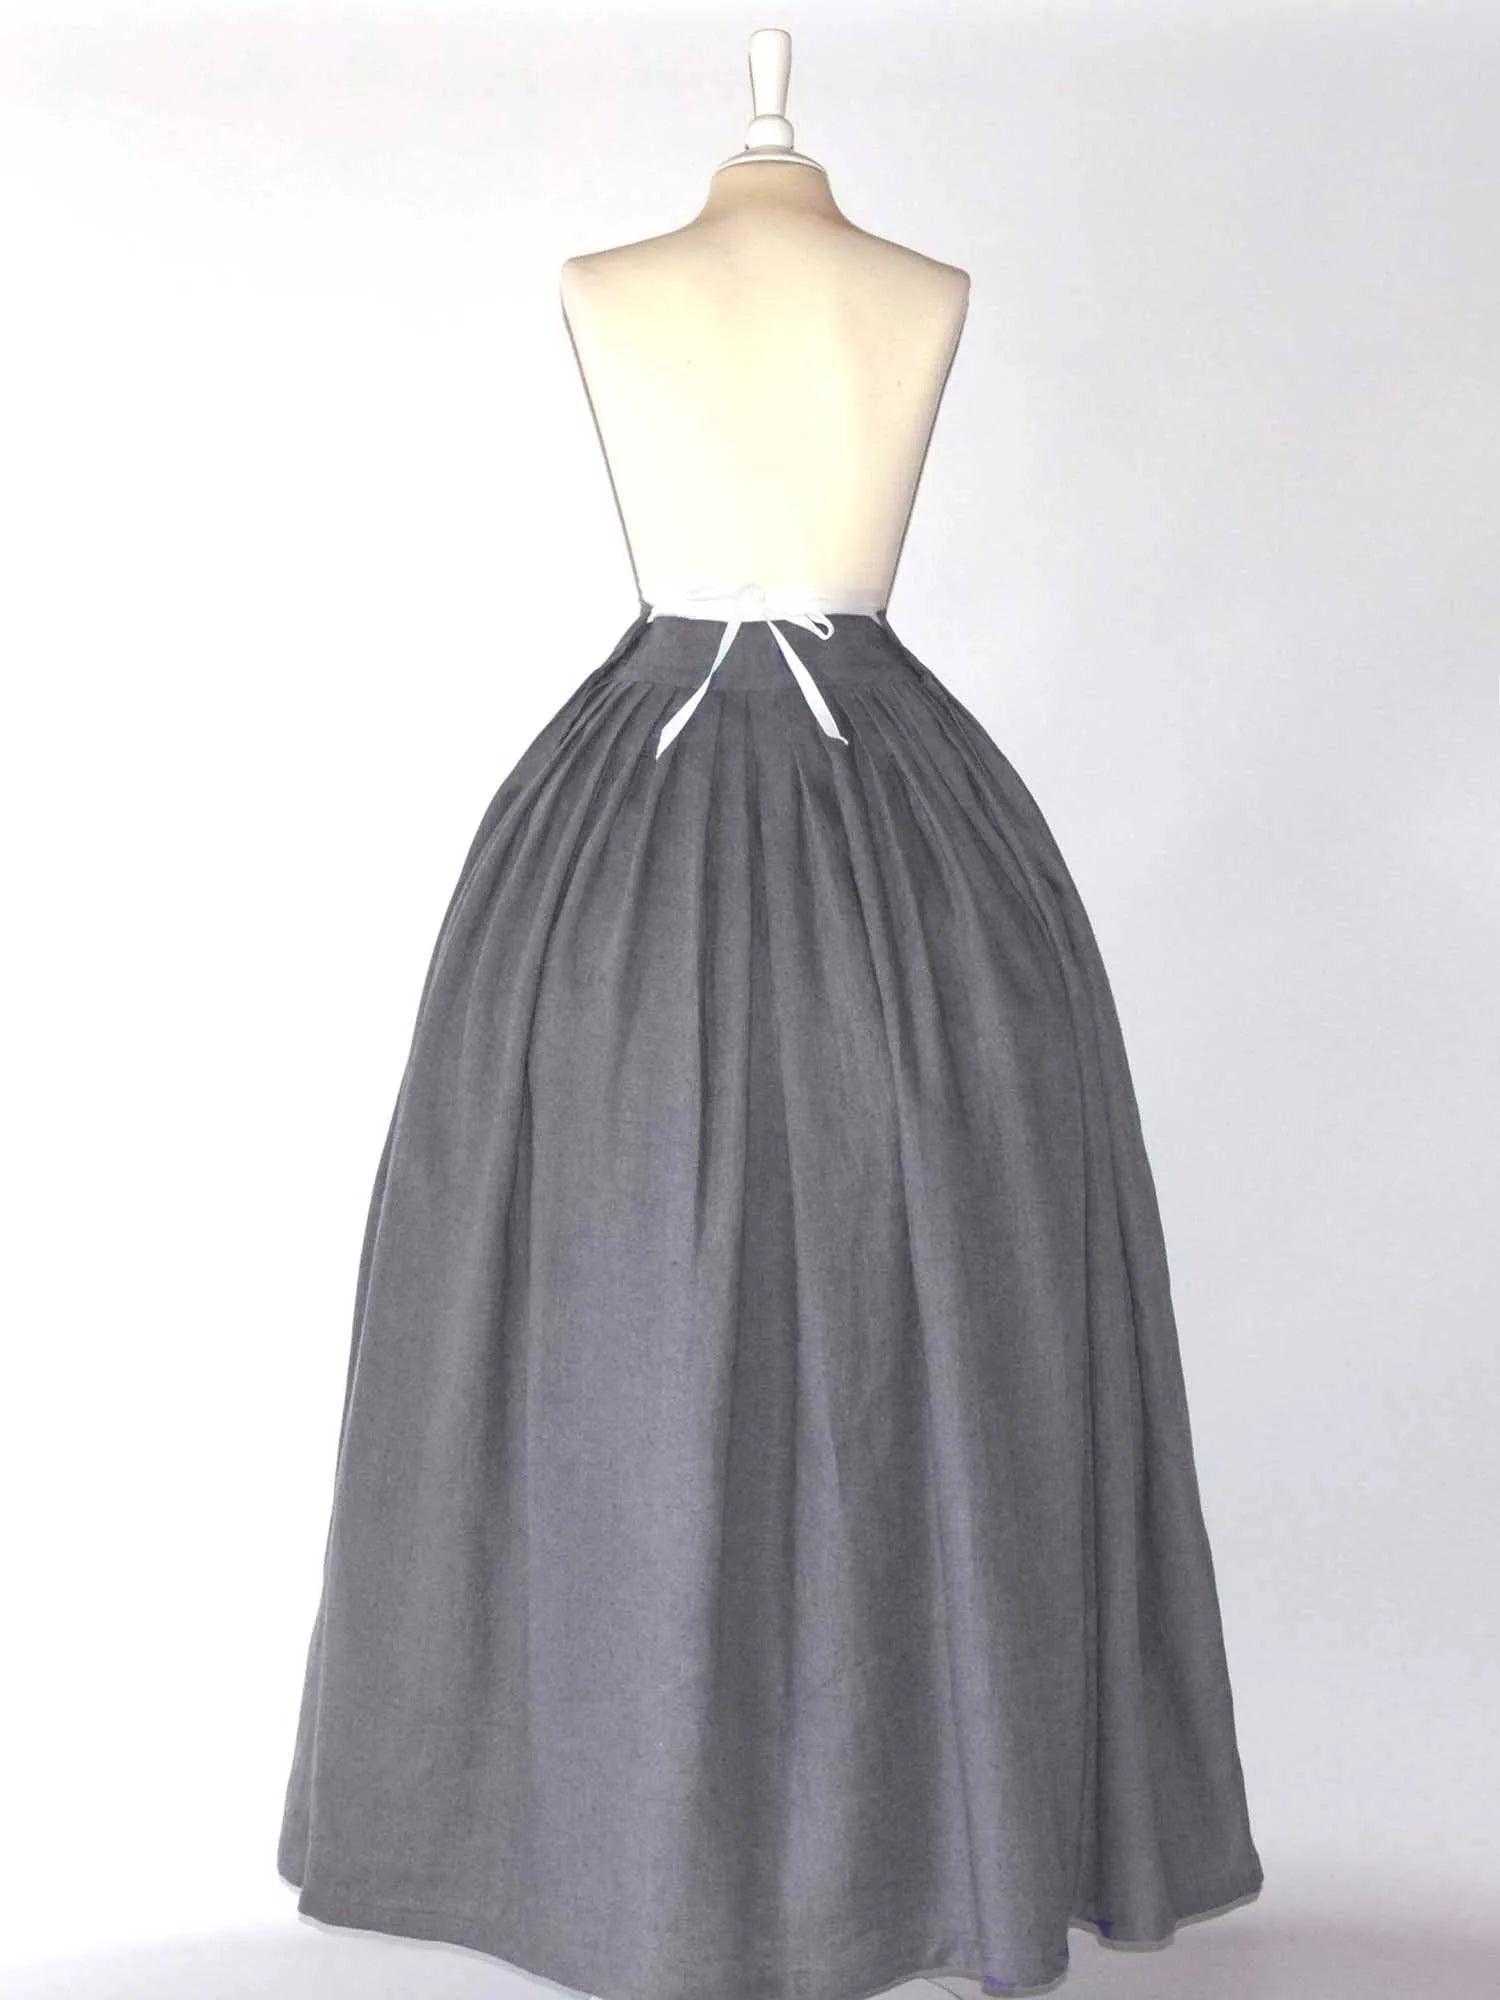 HELOISE, Historical Skirt in Light Gray Linen - Atelier Serraspina